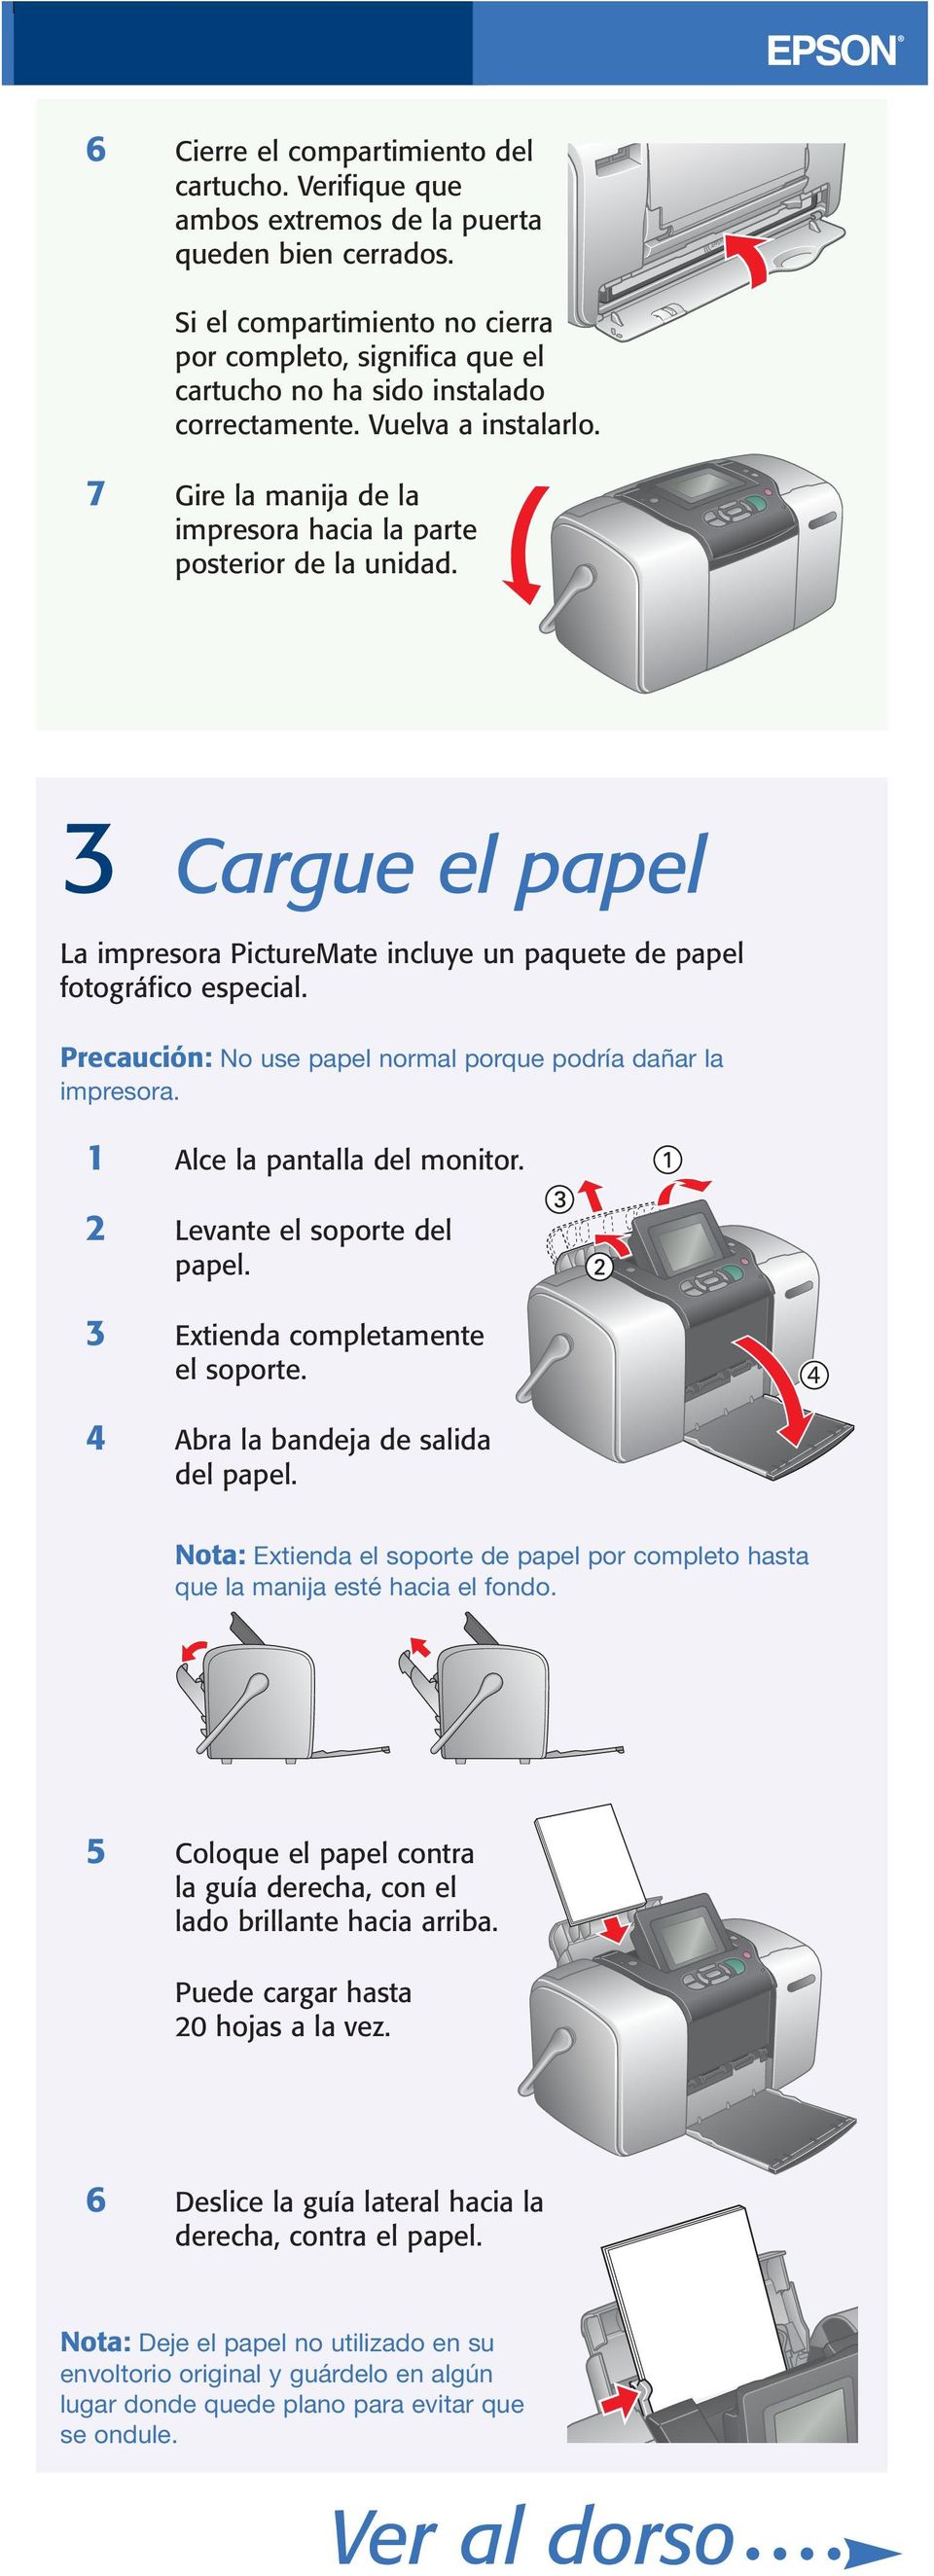 3 Cargue el papel La impresora PictureMate incluye un paquete de papel fotográfico especial. Precaución: No use papel normal porque podría dañar la impresora. 1 Alce la pantalla del monitor.